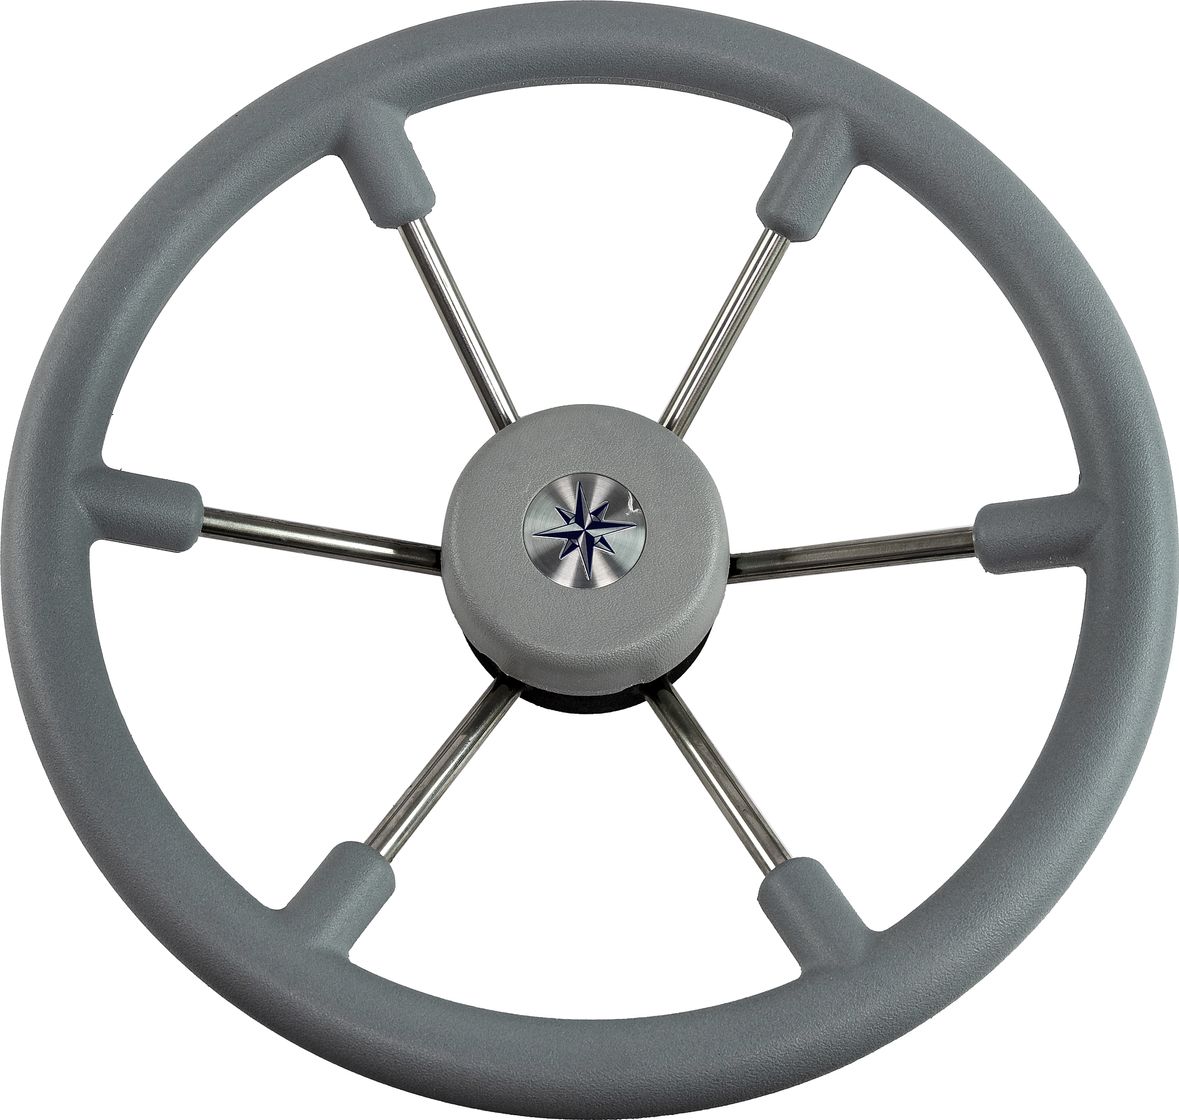 Рулевое колесо LEADER TANEGUM серый обод серебряные спицы д. 360 мм VN7360-03 сумка для ноутбука hama 13 3 perth серый полиуретан 00196605 упак 1шт